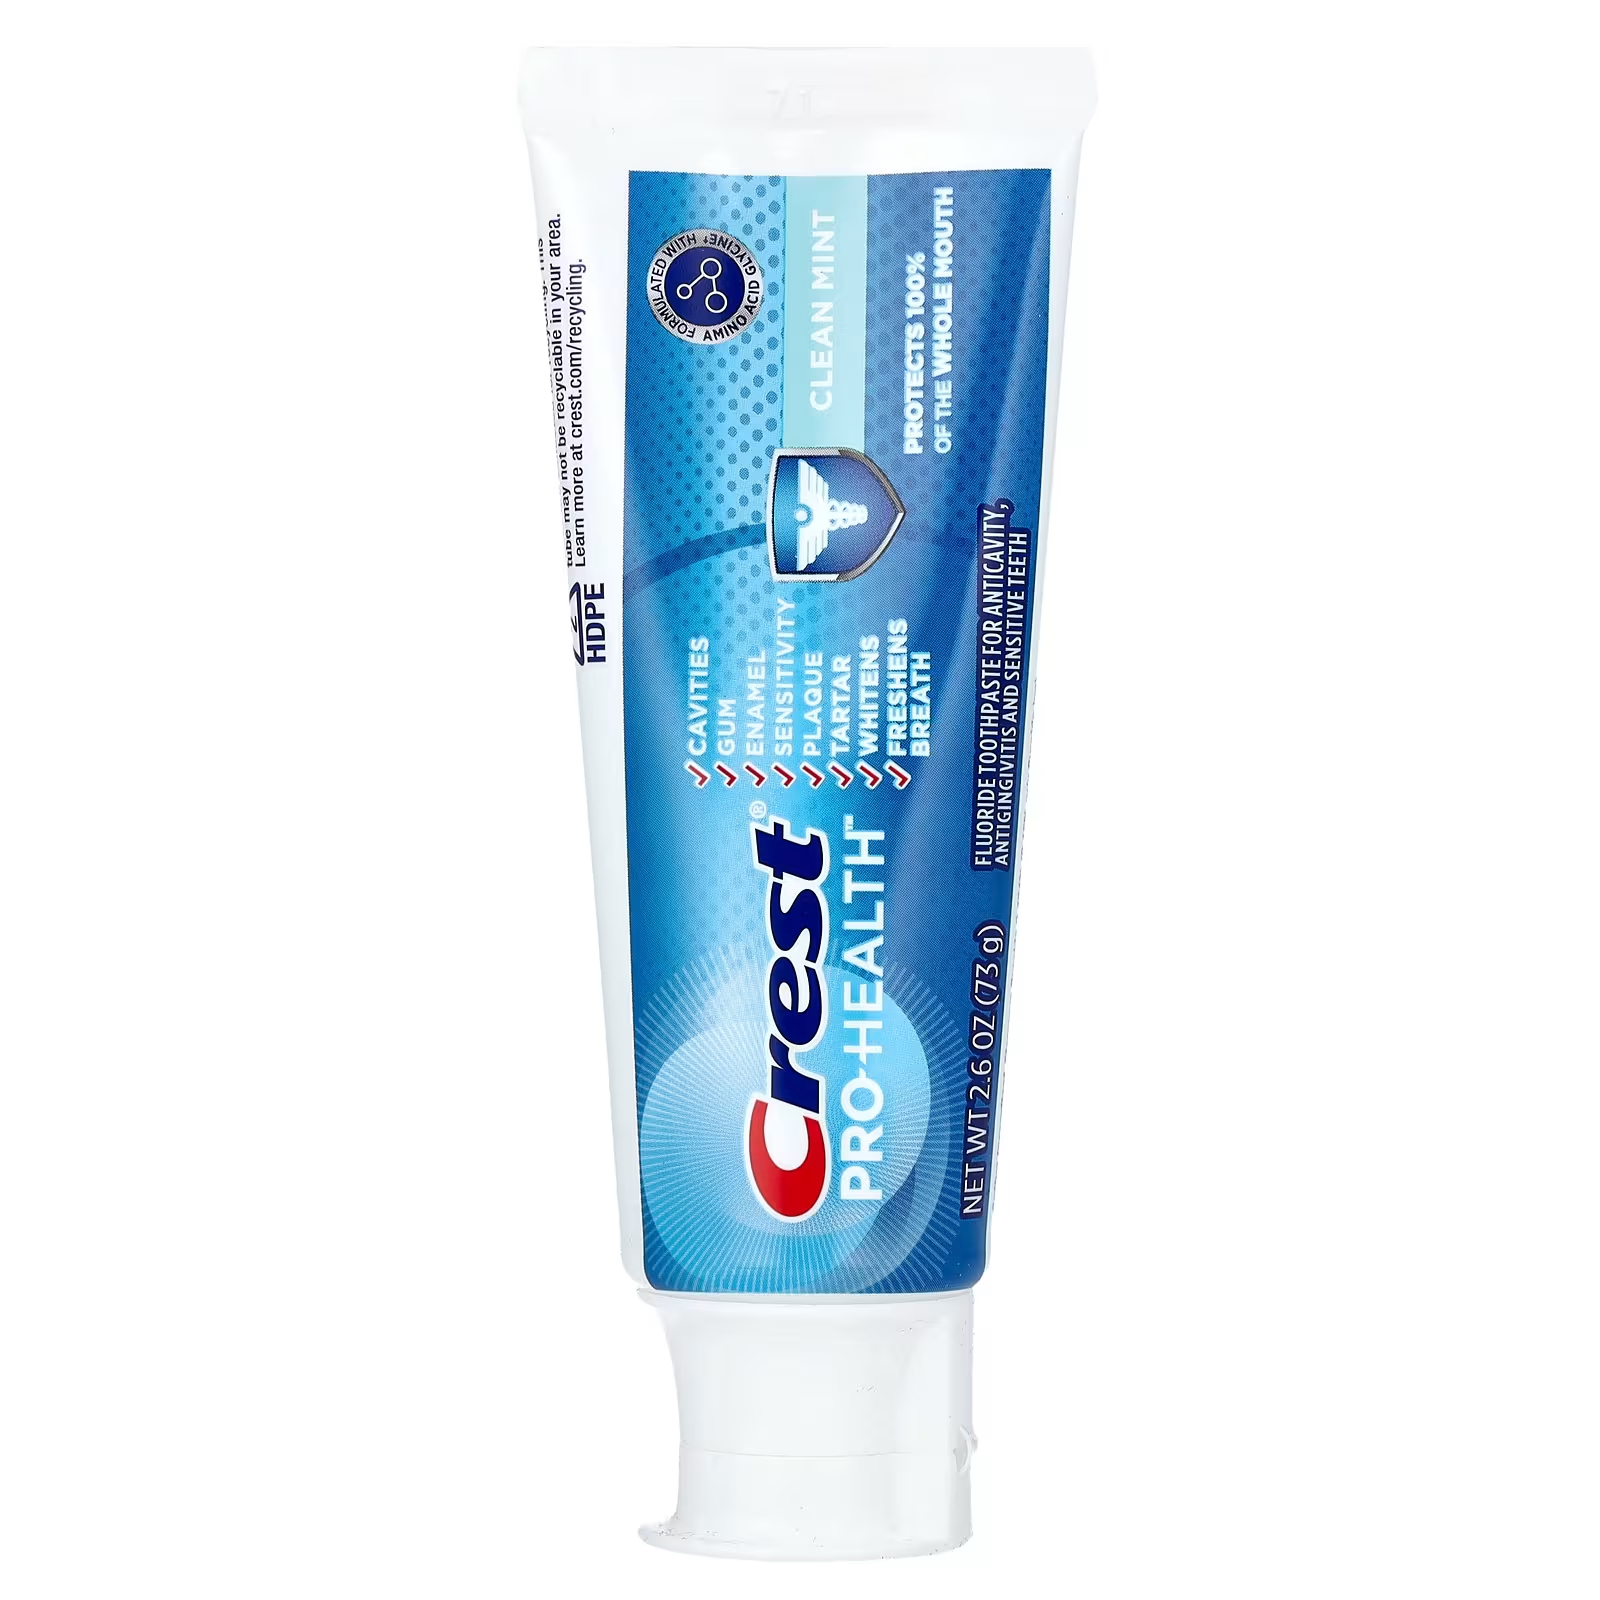 Зубная паста с фтором Crest Pro-Health чистая мята, 73 г пищевая сода зубная паста 232 г crest